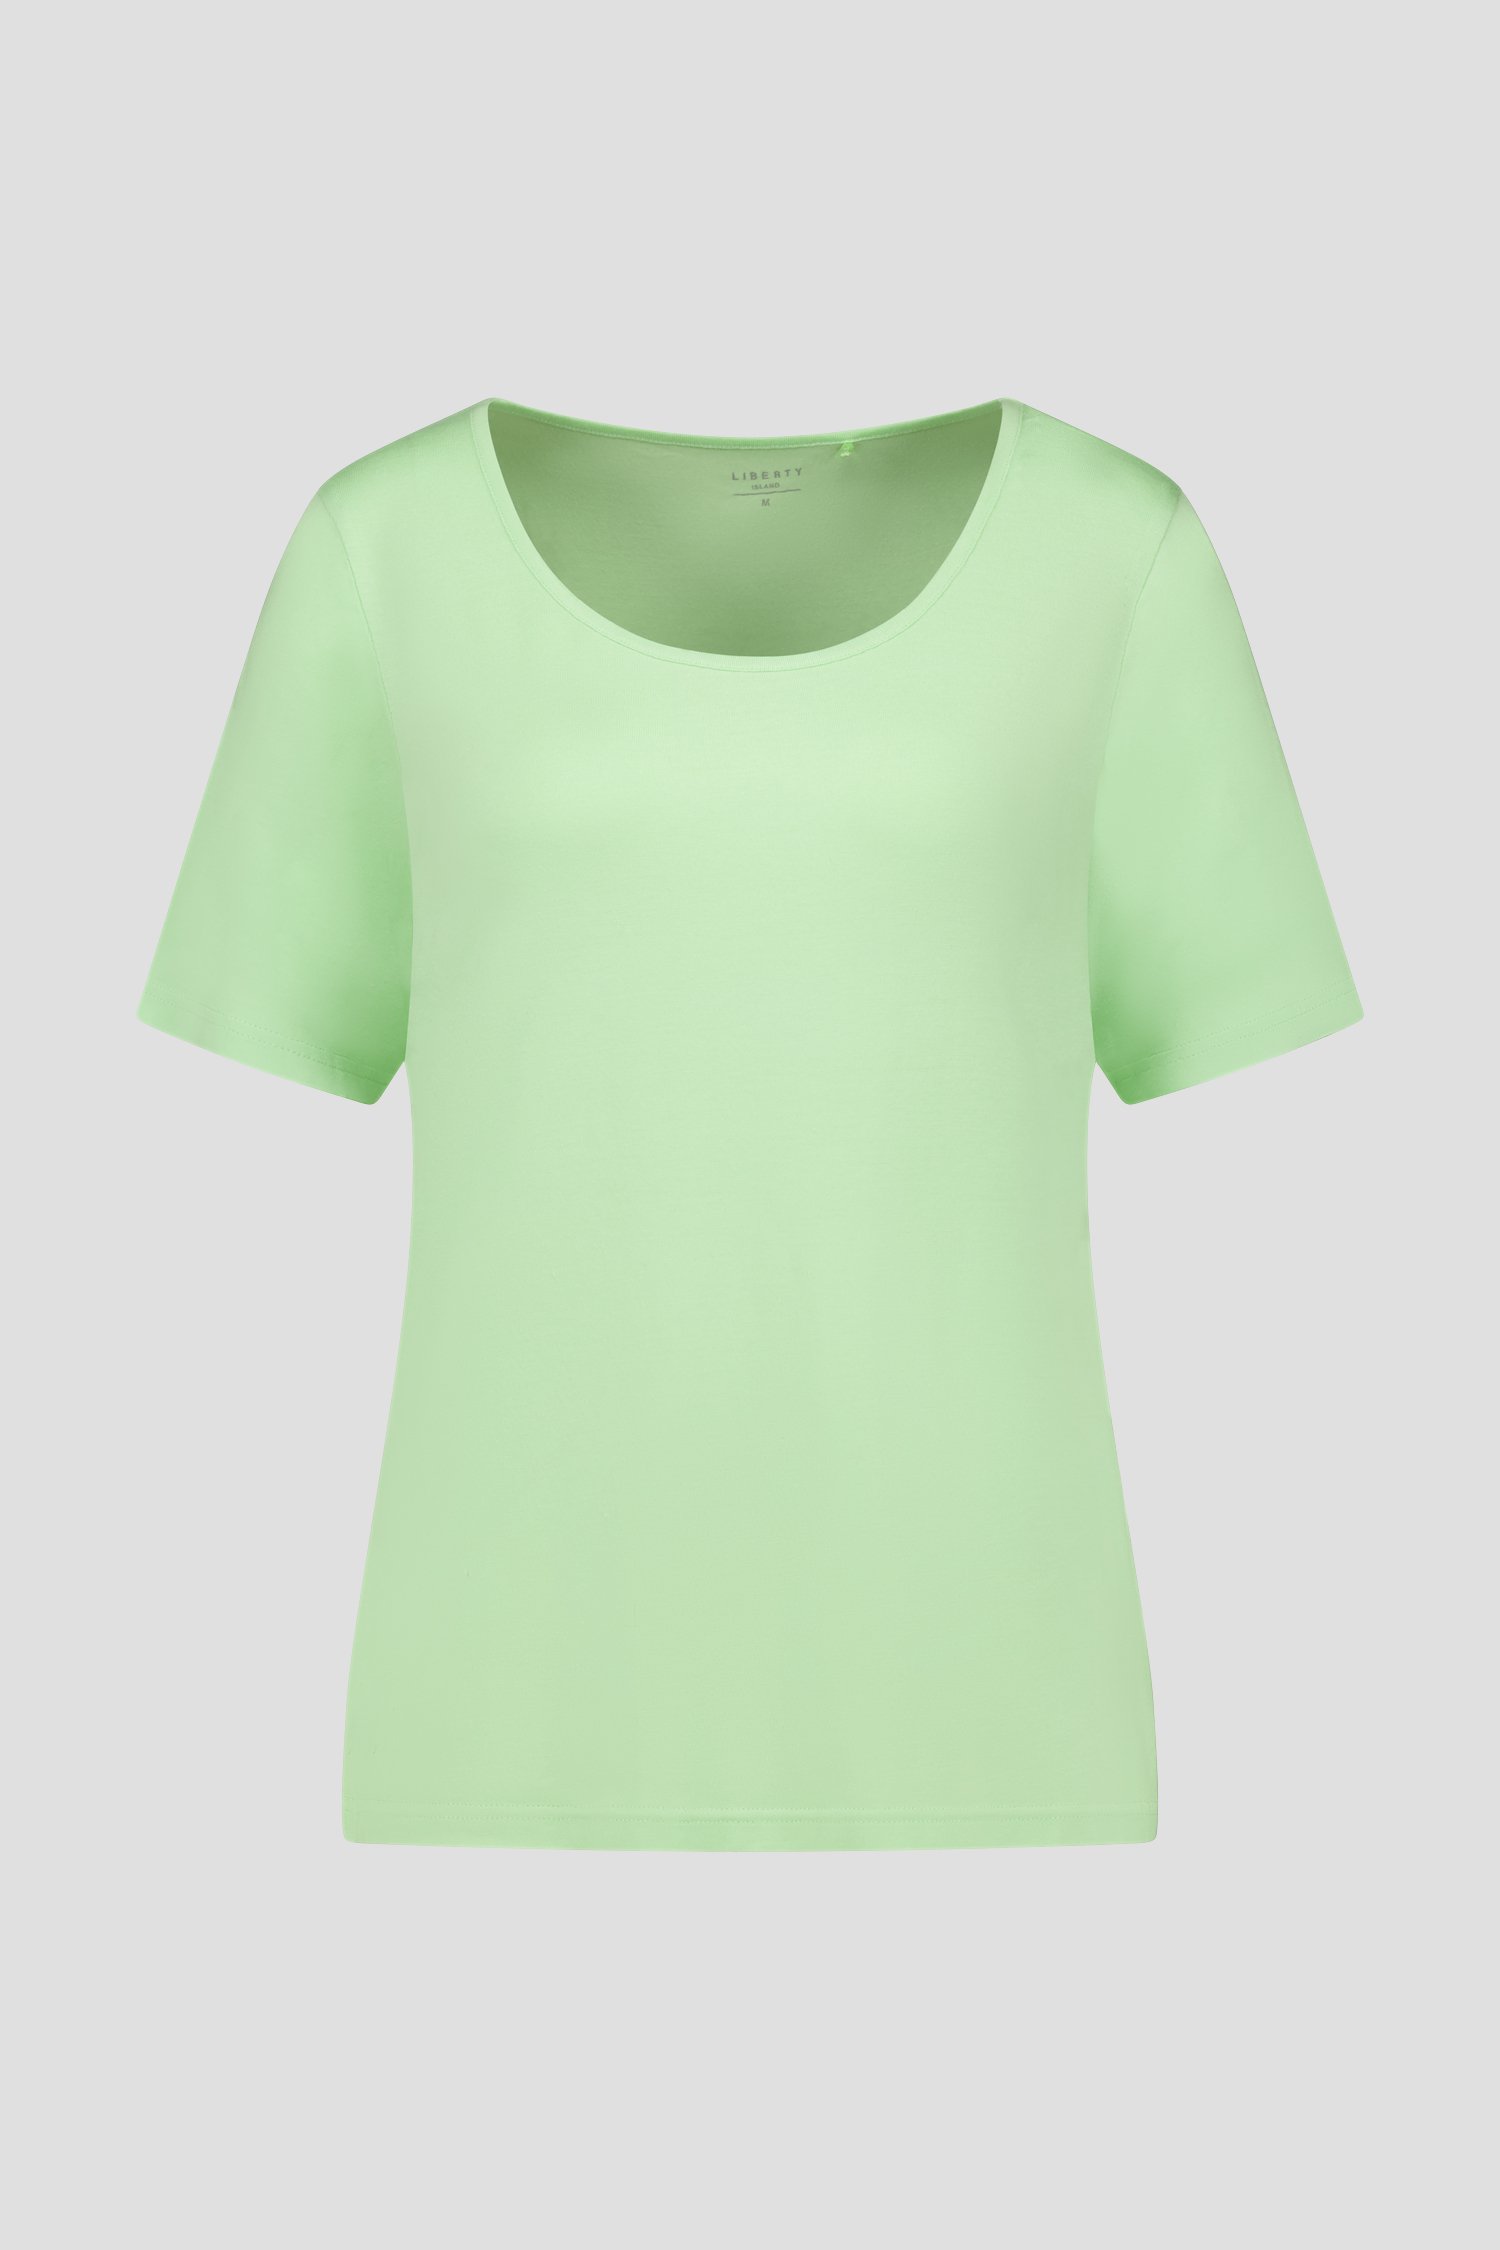 T-shirt à manches courtes vert clair de Liberty Island pour Femmes